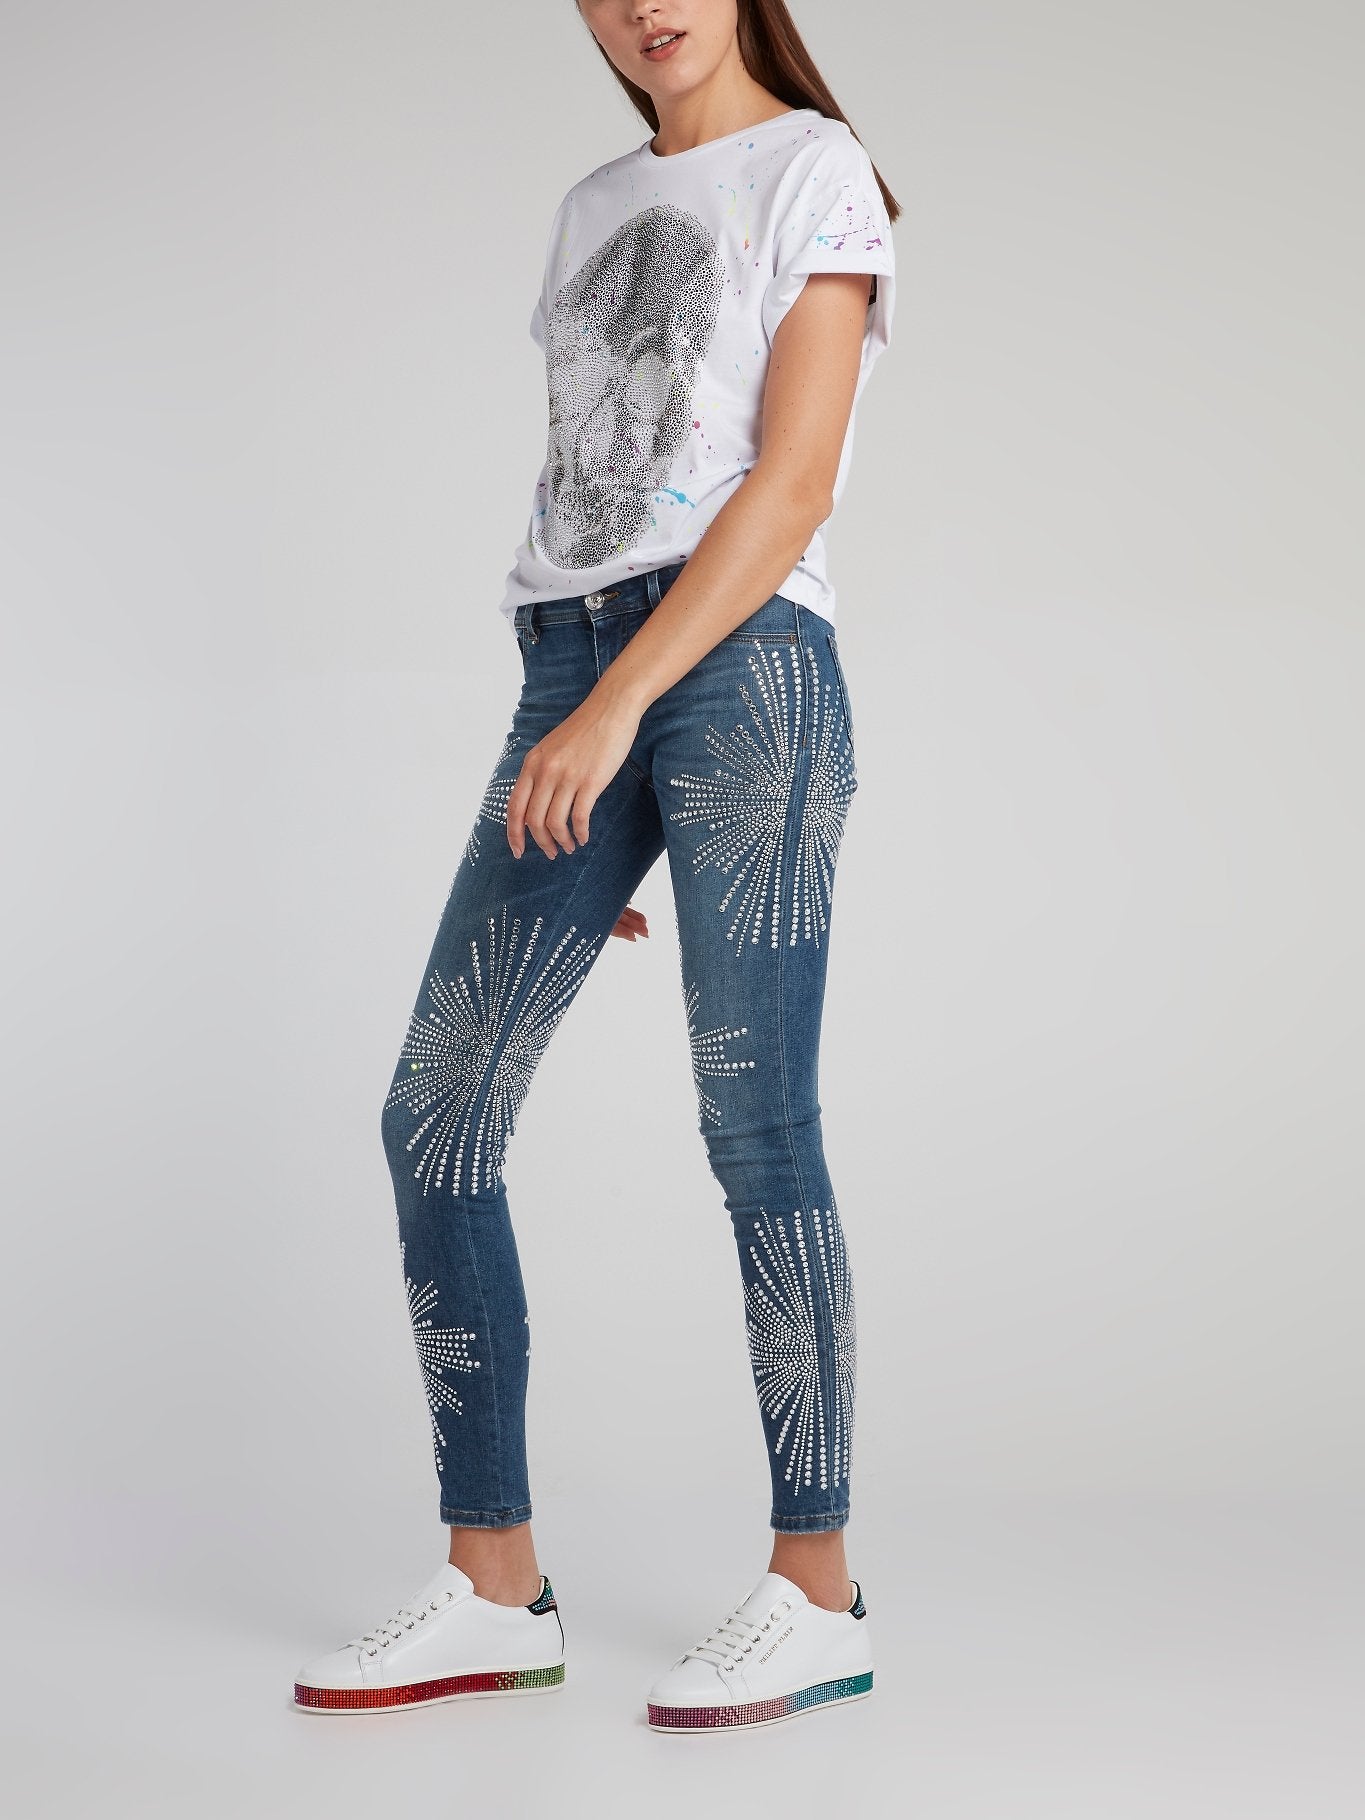 Crystal Multi-Stud Skinny Jeans